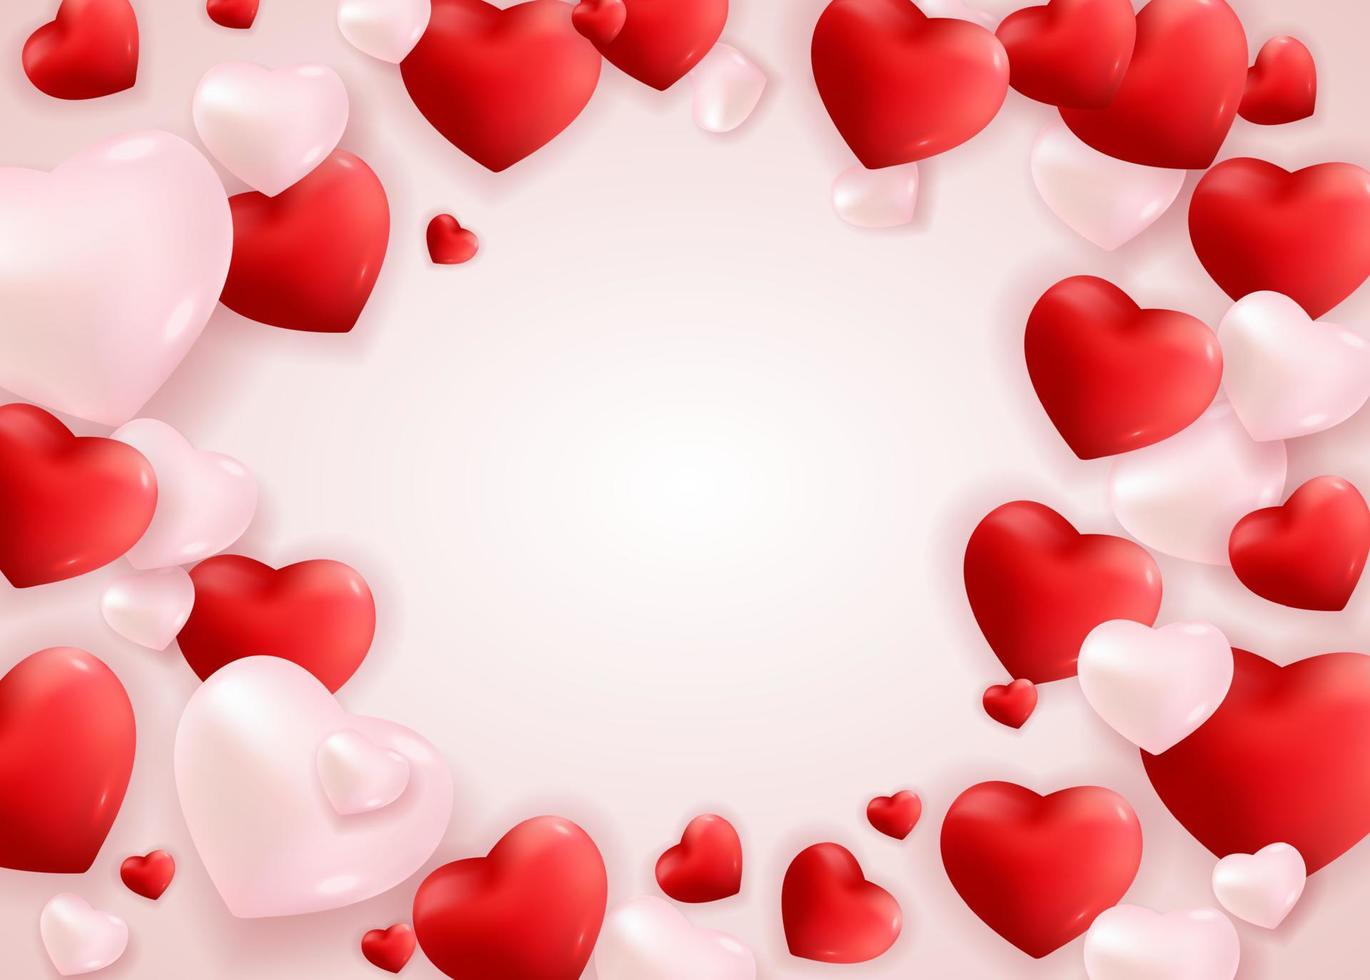 Valentijnsdag liefde en gevoelens achtergrondontwerp. vector illustratie